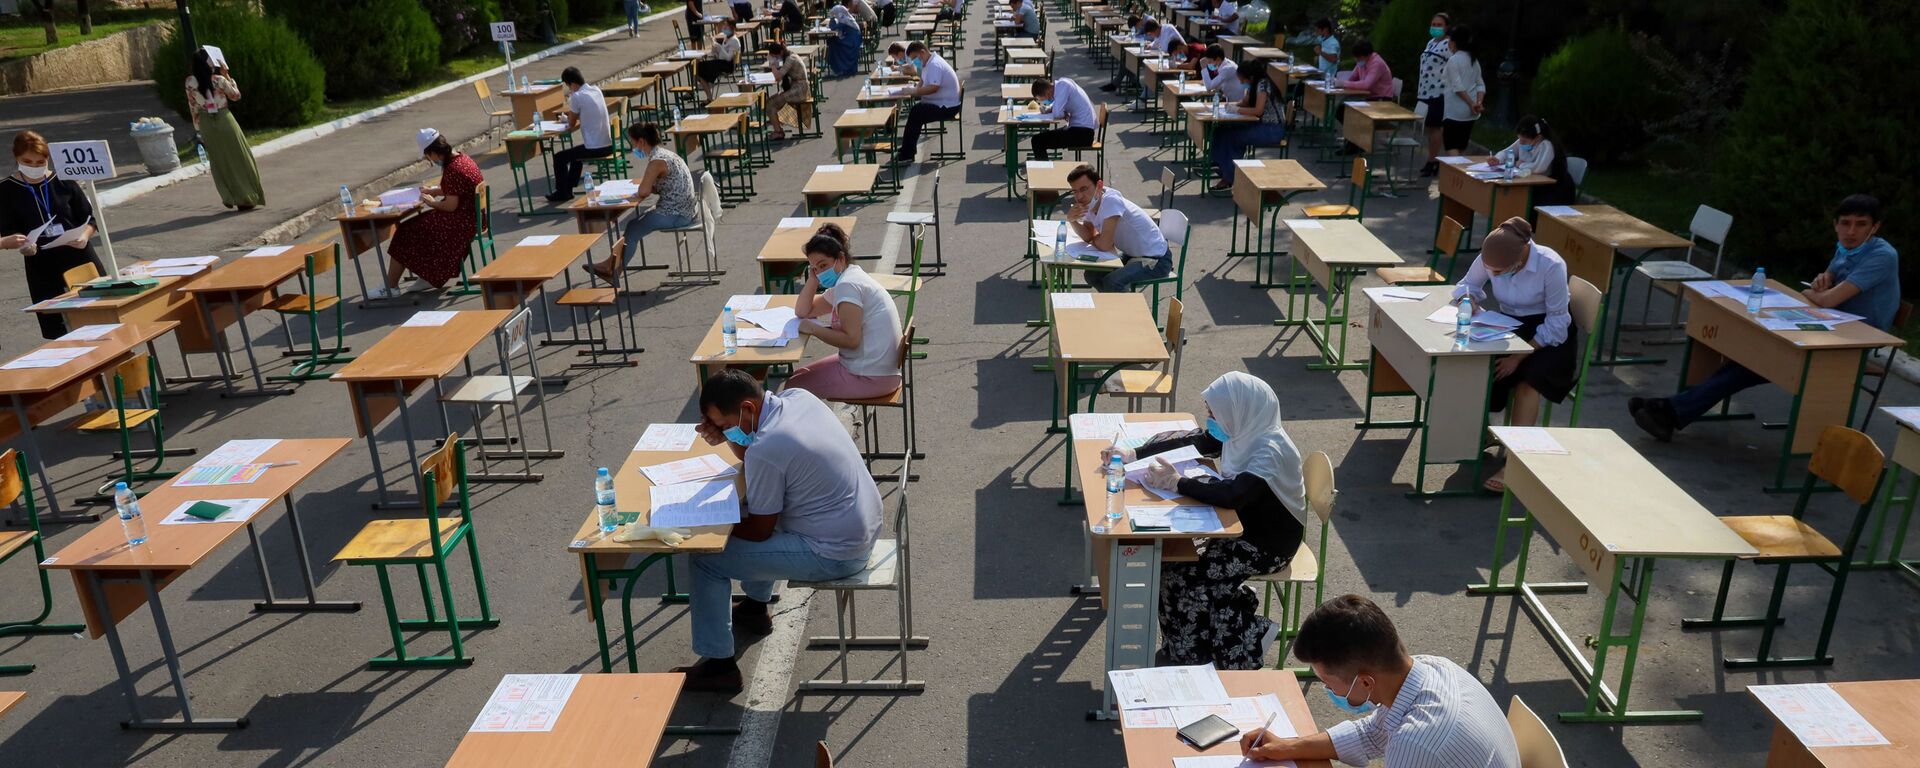 Узбекские студенты сдают вступительные экзамены под открытым небом в Ташкенте - Sputnik Узбекистан, 1920, 01.06.2021